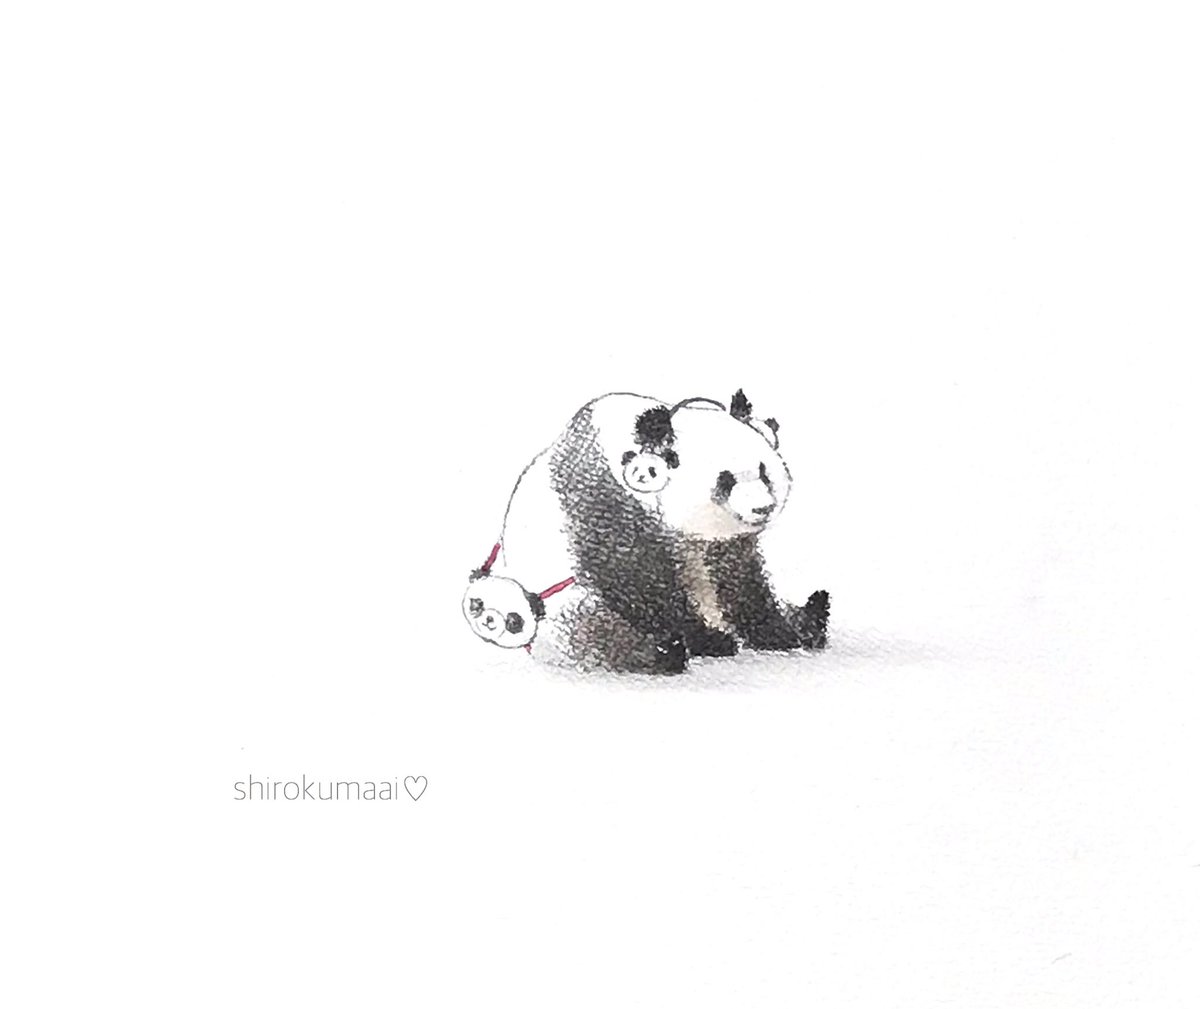 ぜ んぶお気に入り 上野動物園 シャンシャン パンダ イラスト 中村 愛のイラスト